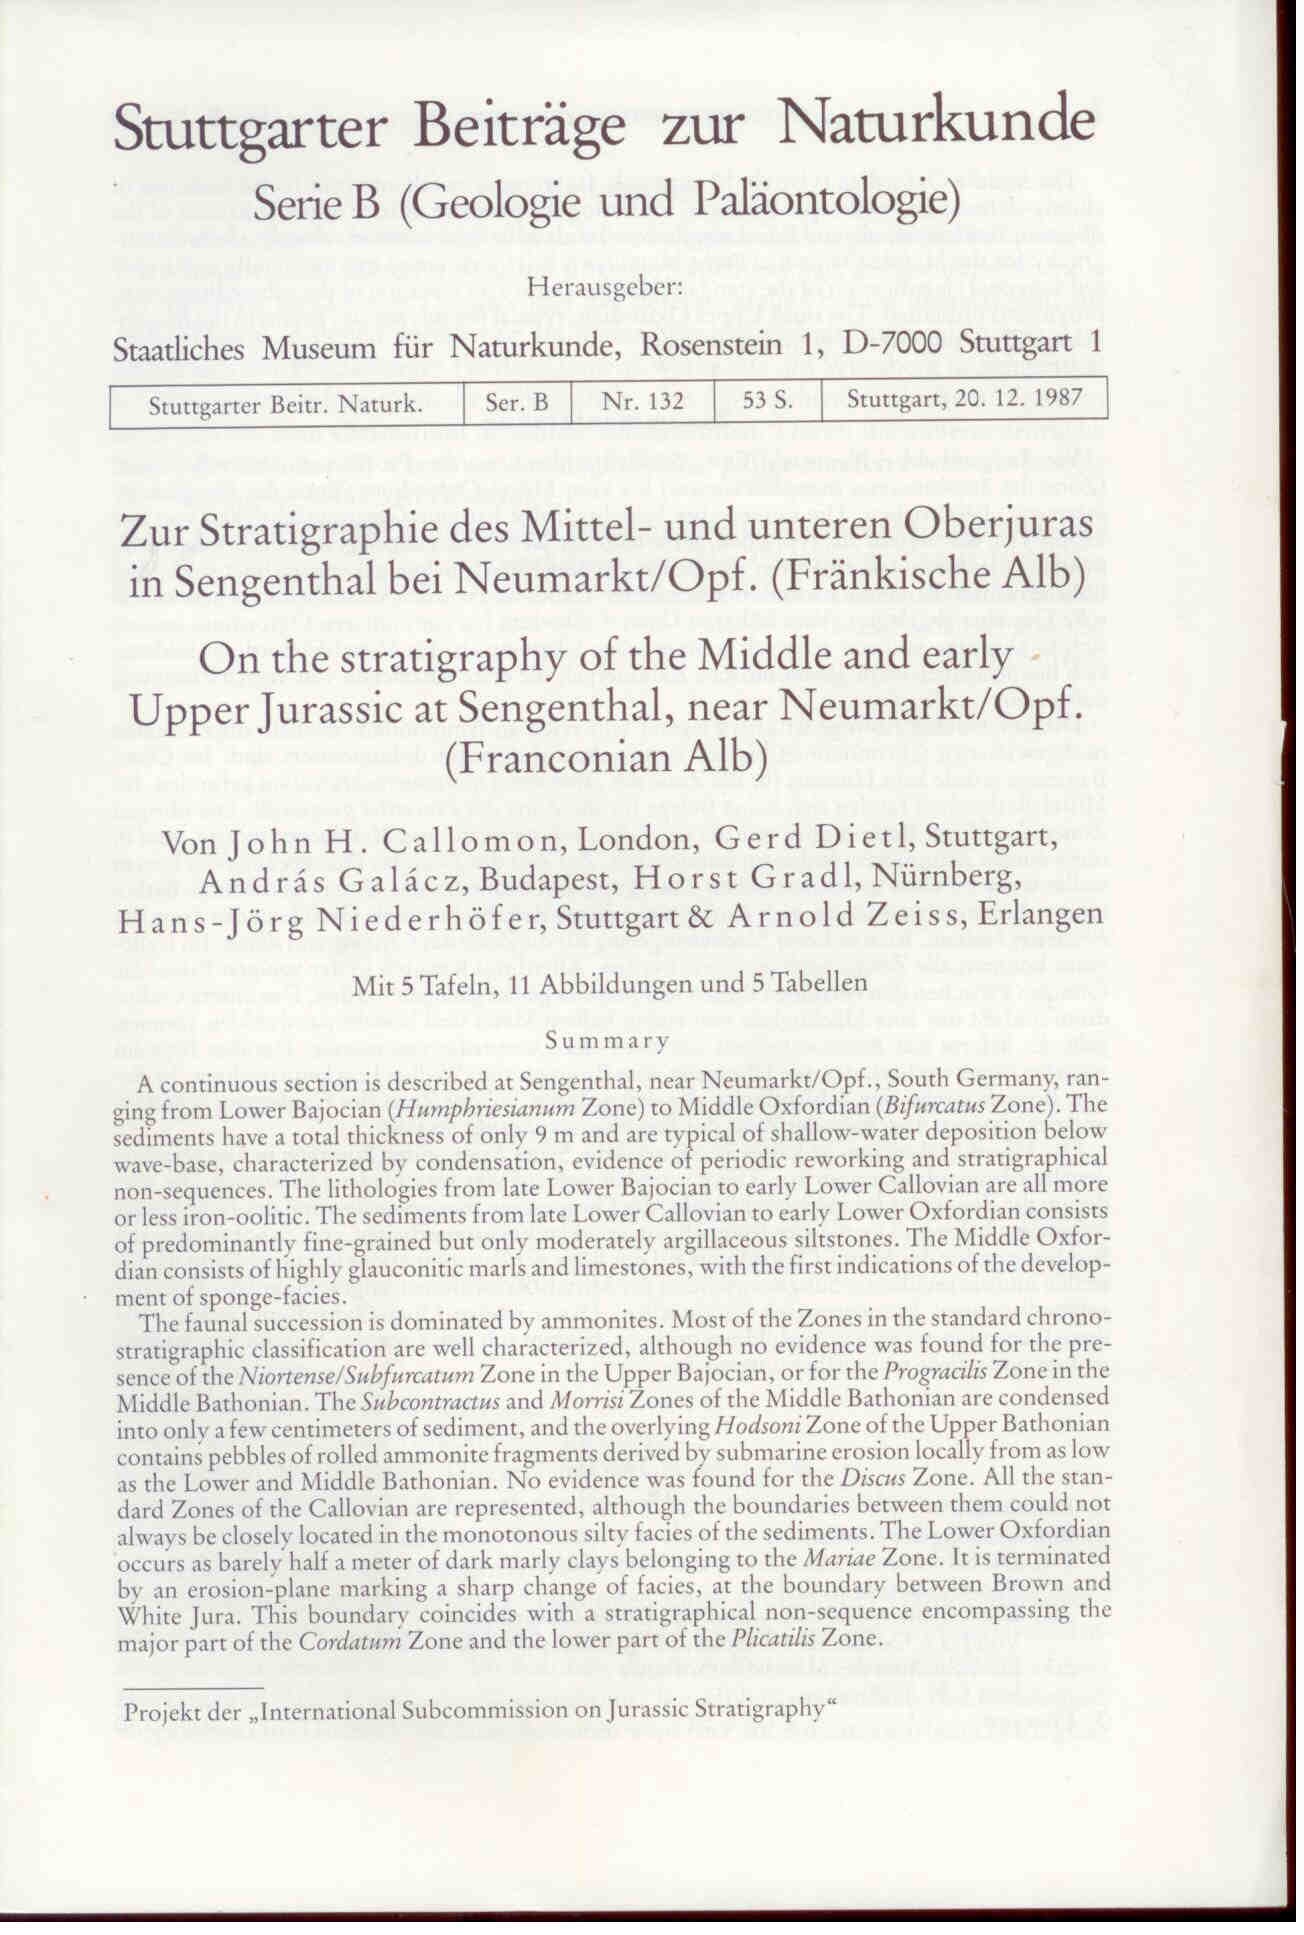 Callomon, J.H.: Zur Stratigraphie des Mittel- und unteren Oberjuras in Sengenthal bei Neumarkt/Opf. (Fränkische Alb).